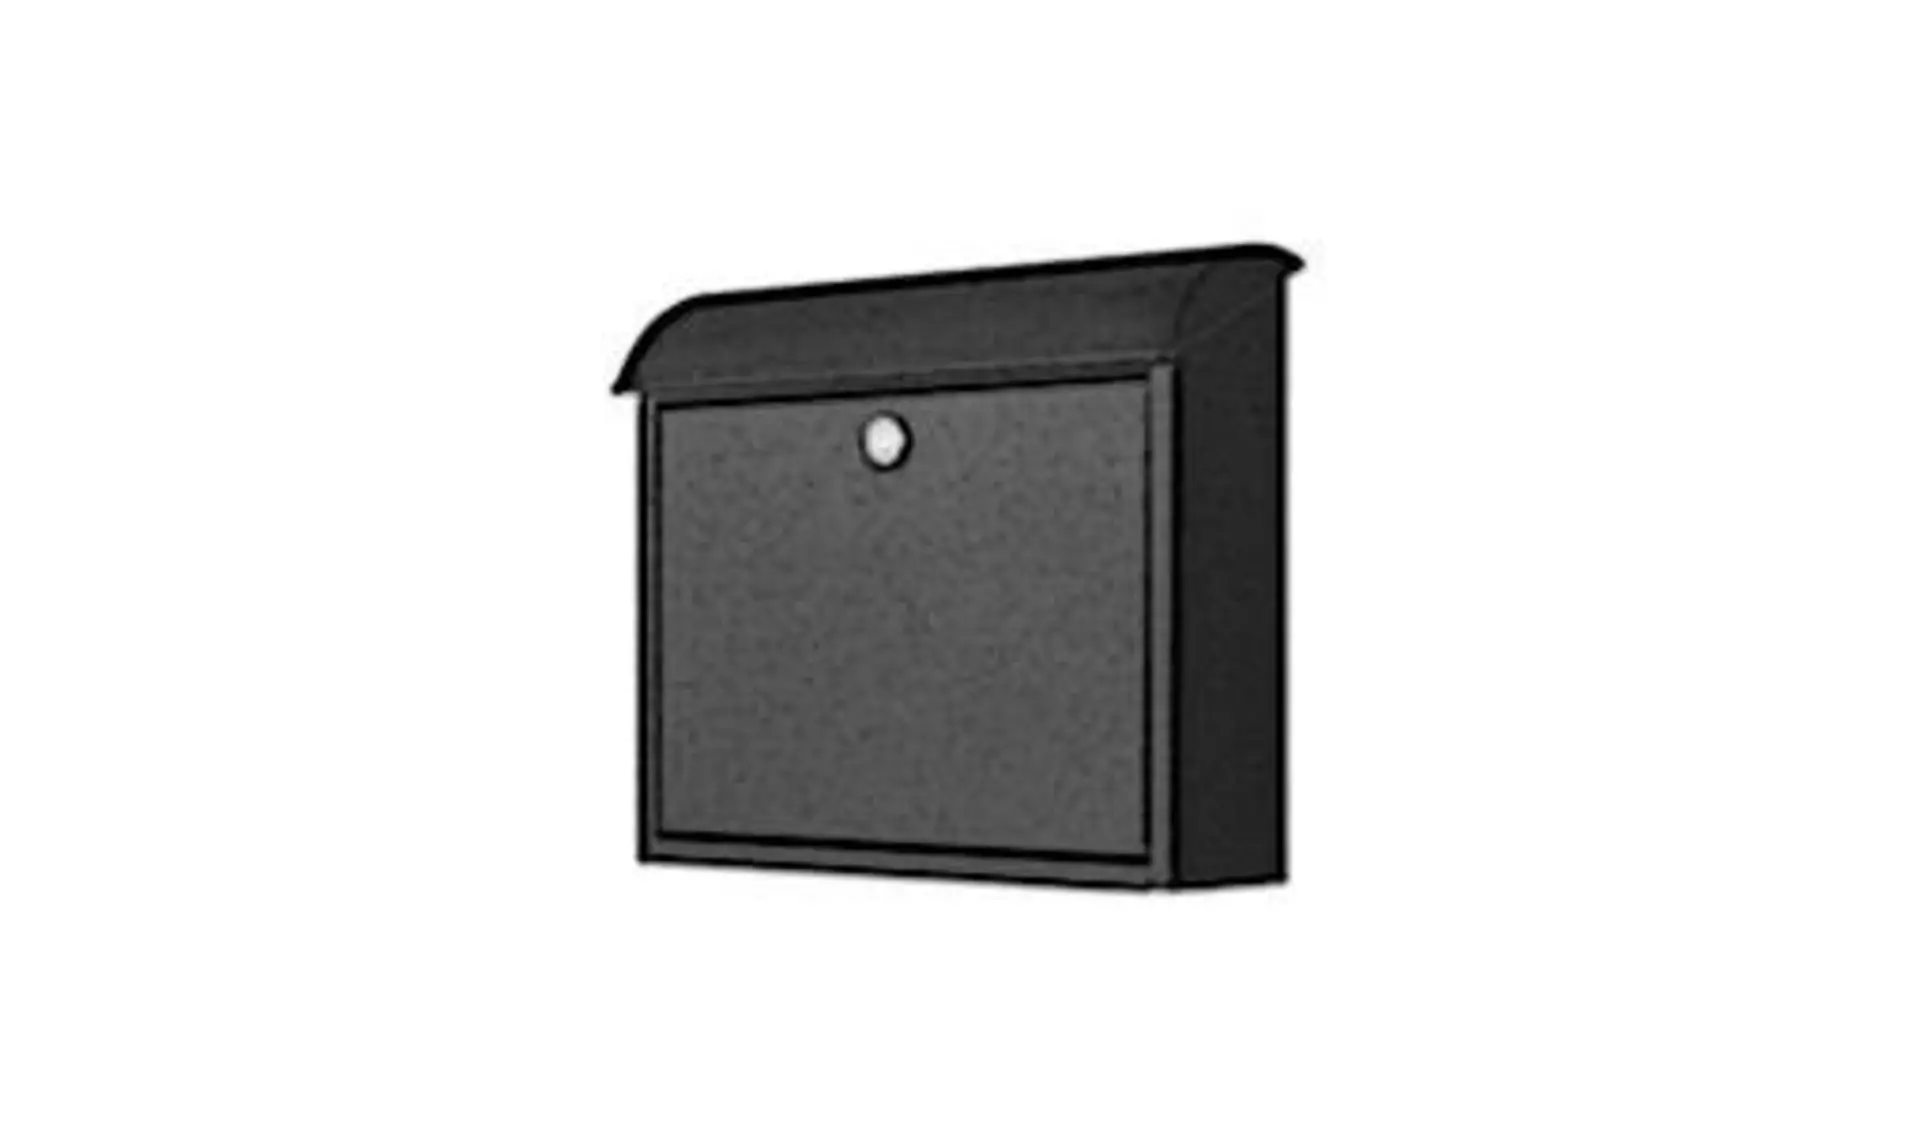 Rechteckiger Briefkasten mit halbrundem Deckel in anthrazit. Der typische Briefkasten steht für die Briefkästen innerhalb der Produktwelt..